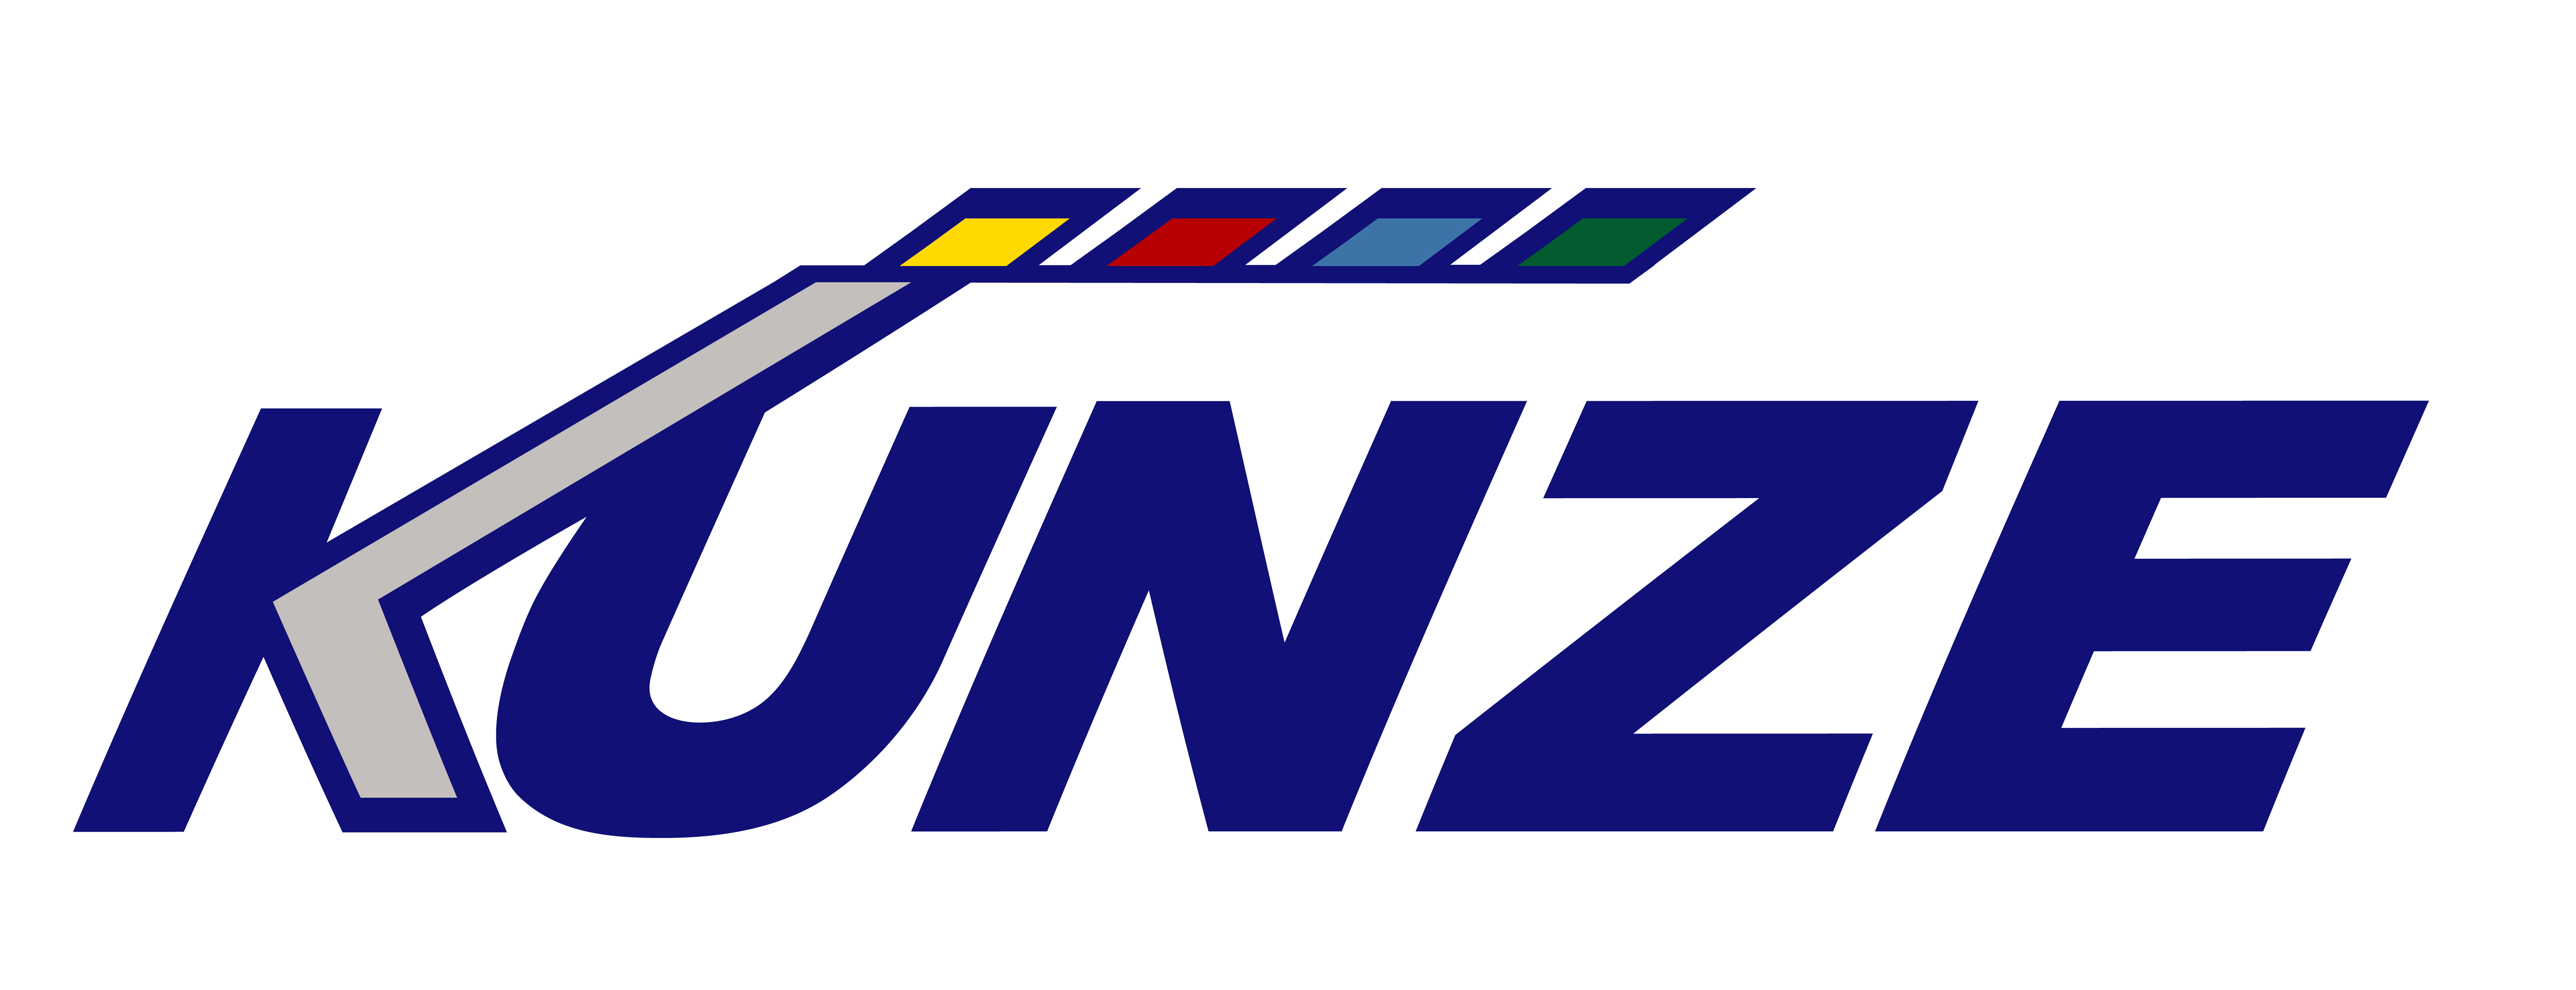 Kunze Logo 2020